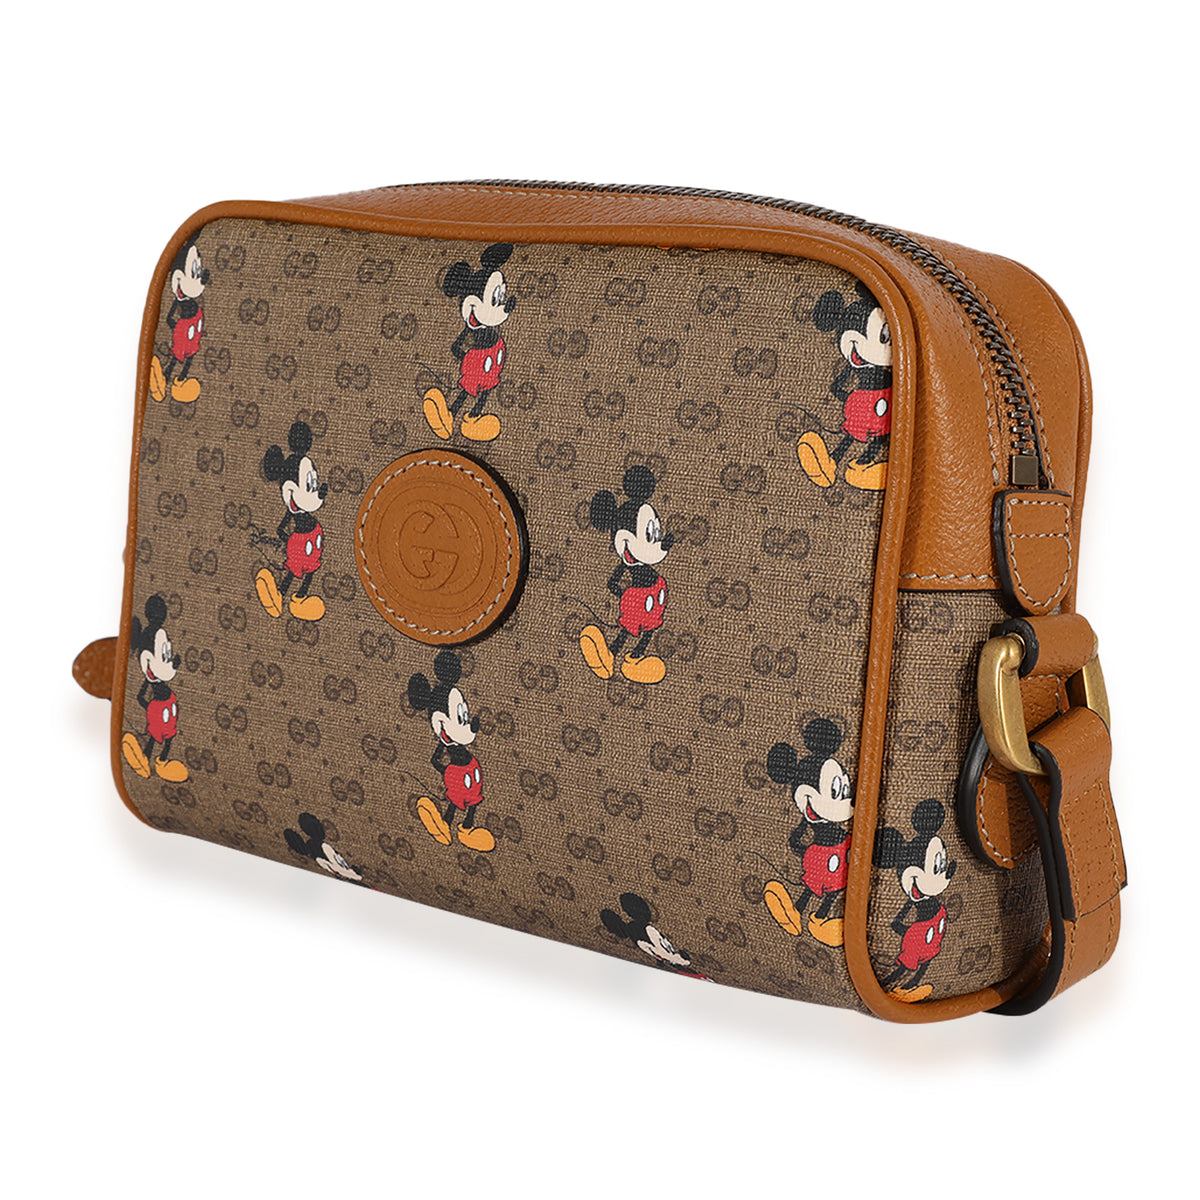 x Disney Mickey Mouse Flap Messenger Bag - Supreme